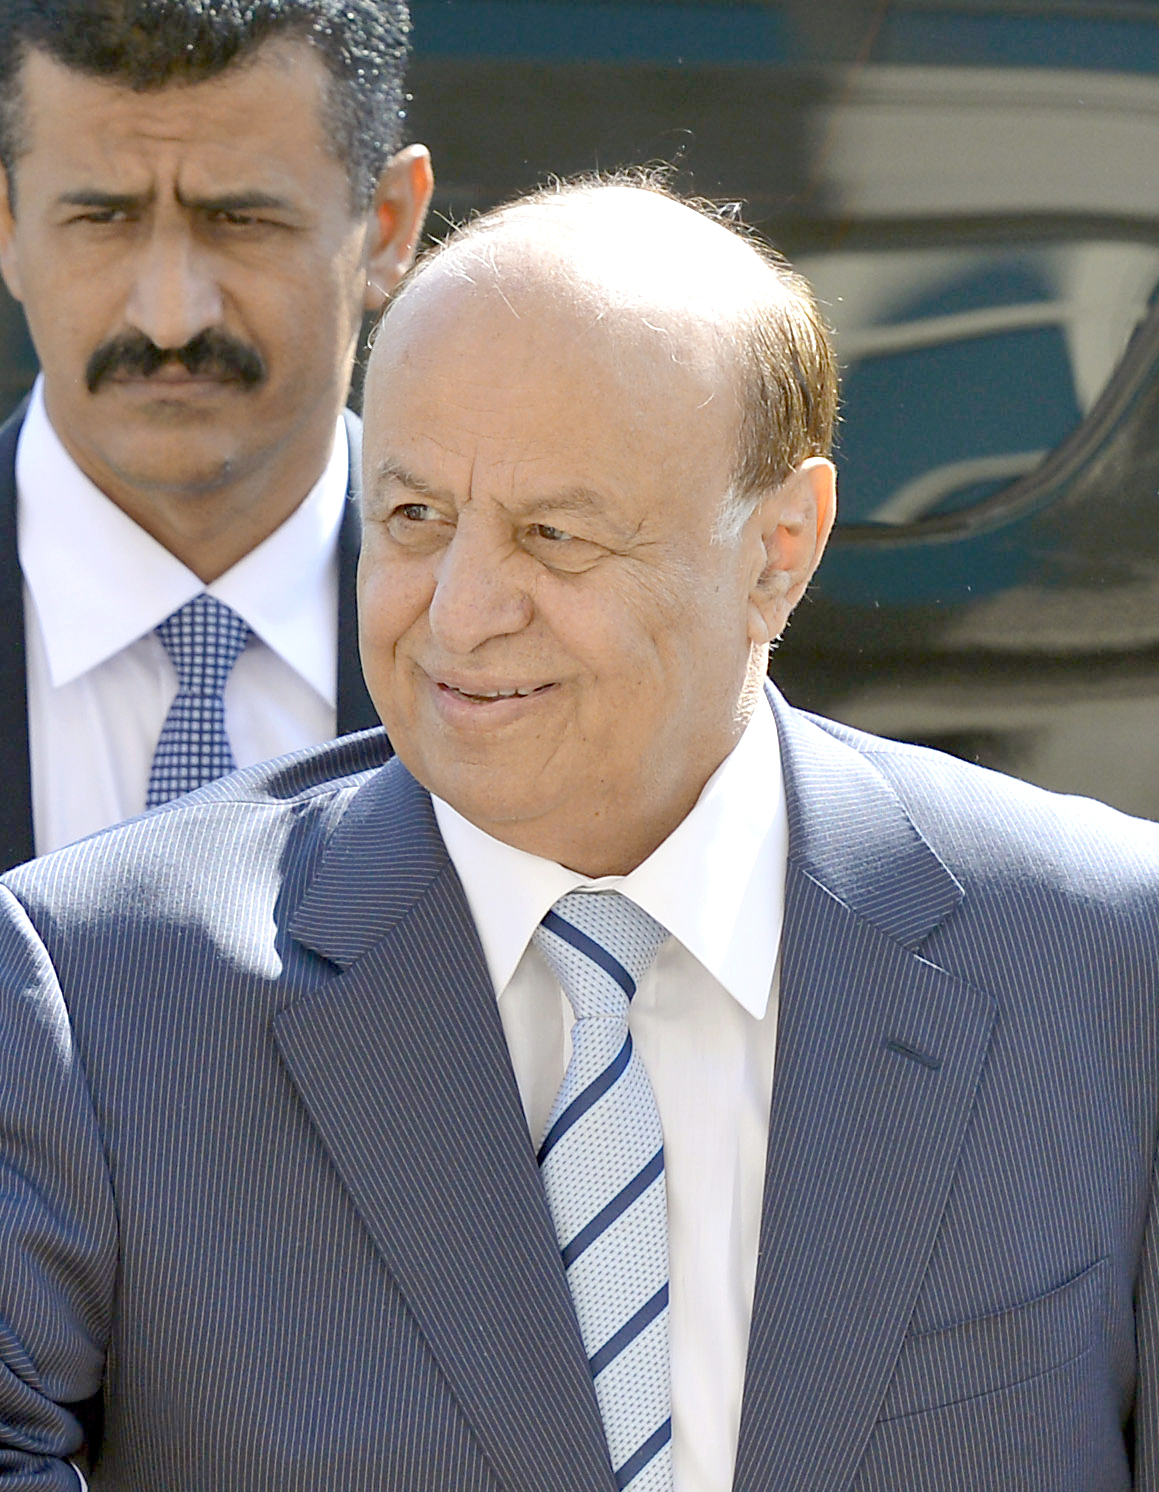 Yemeni President Abd-Rabbu Mansour Hadi